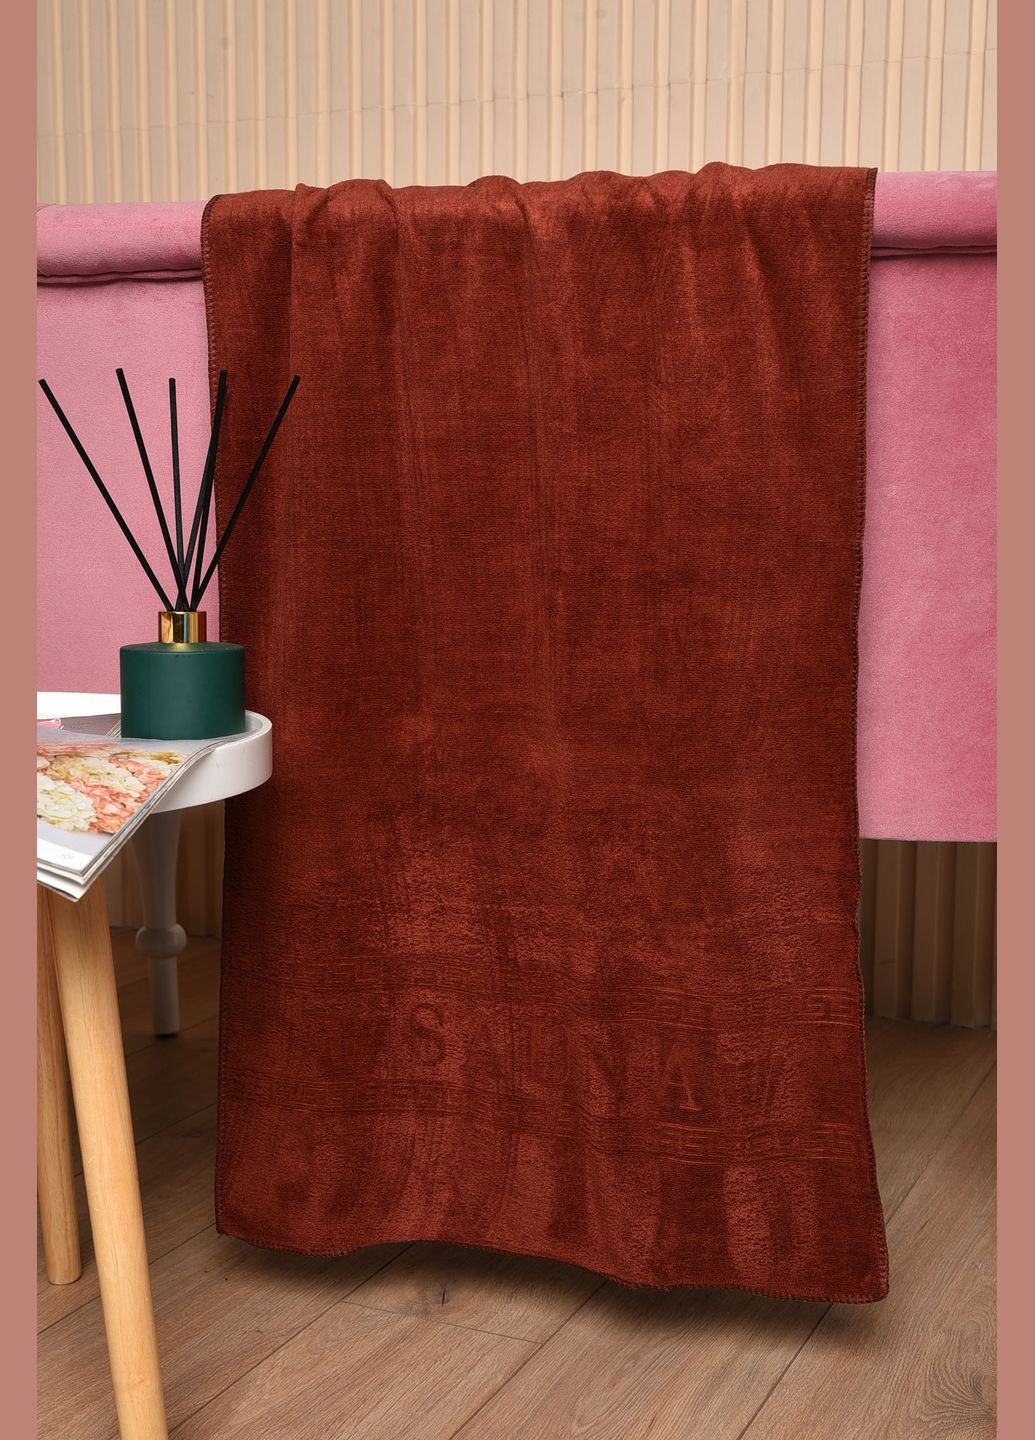 Let's Shop полотенце для лица микрофибра коричневого цвета однотонный коричневый производство - Турция